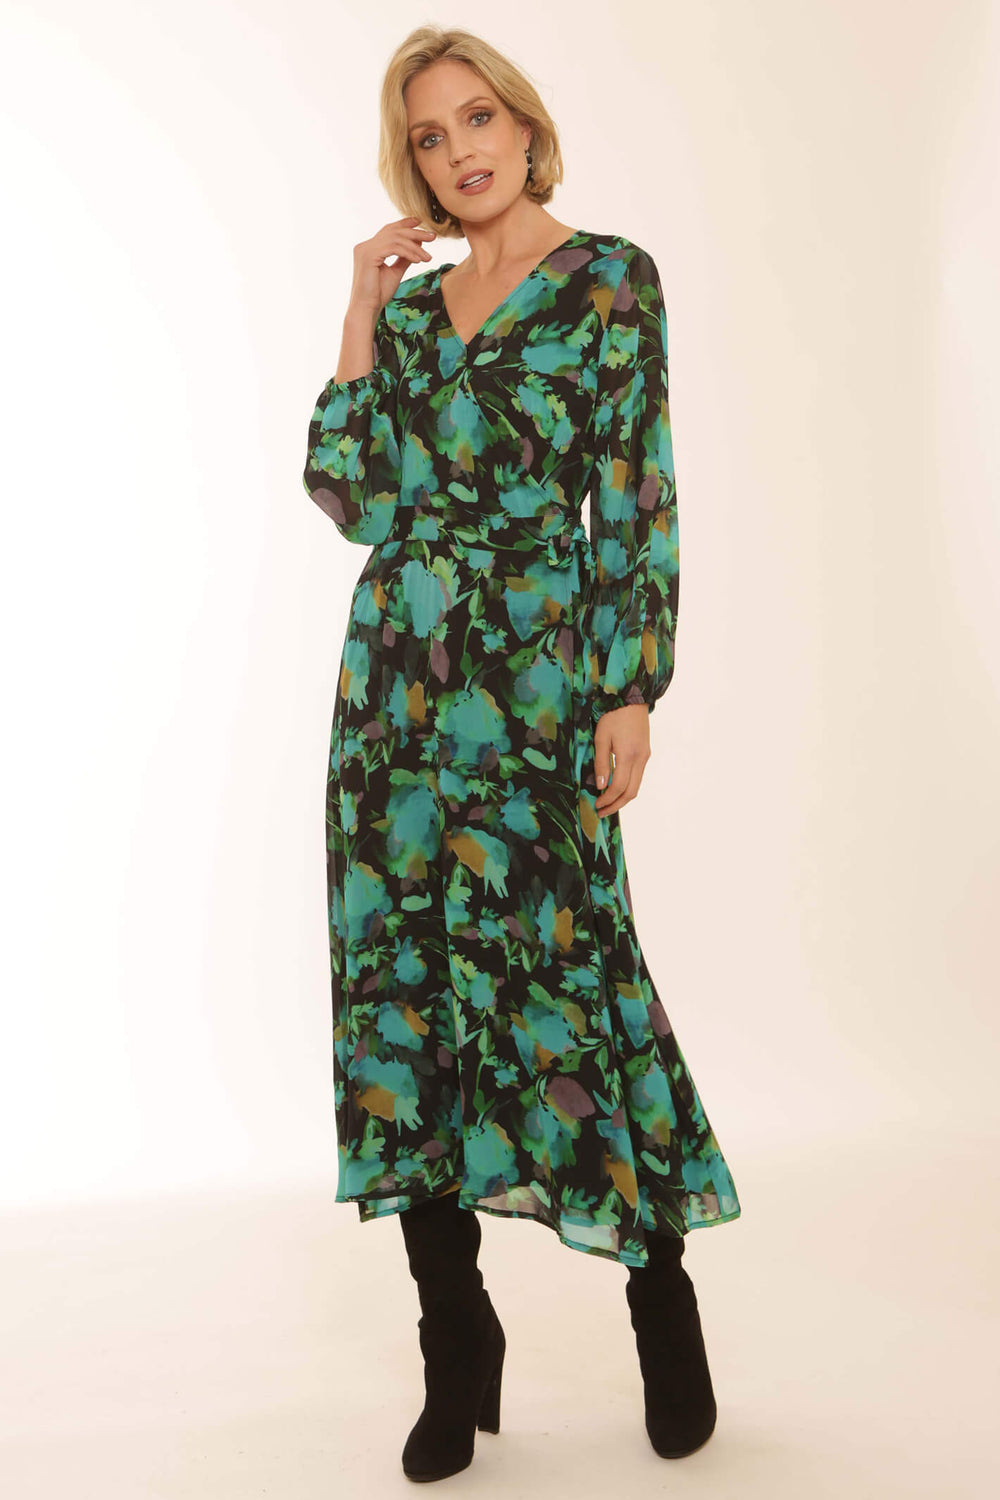 Pomodoro 82356 Emerald Green Floral Wrap Midi Dress - Dotique